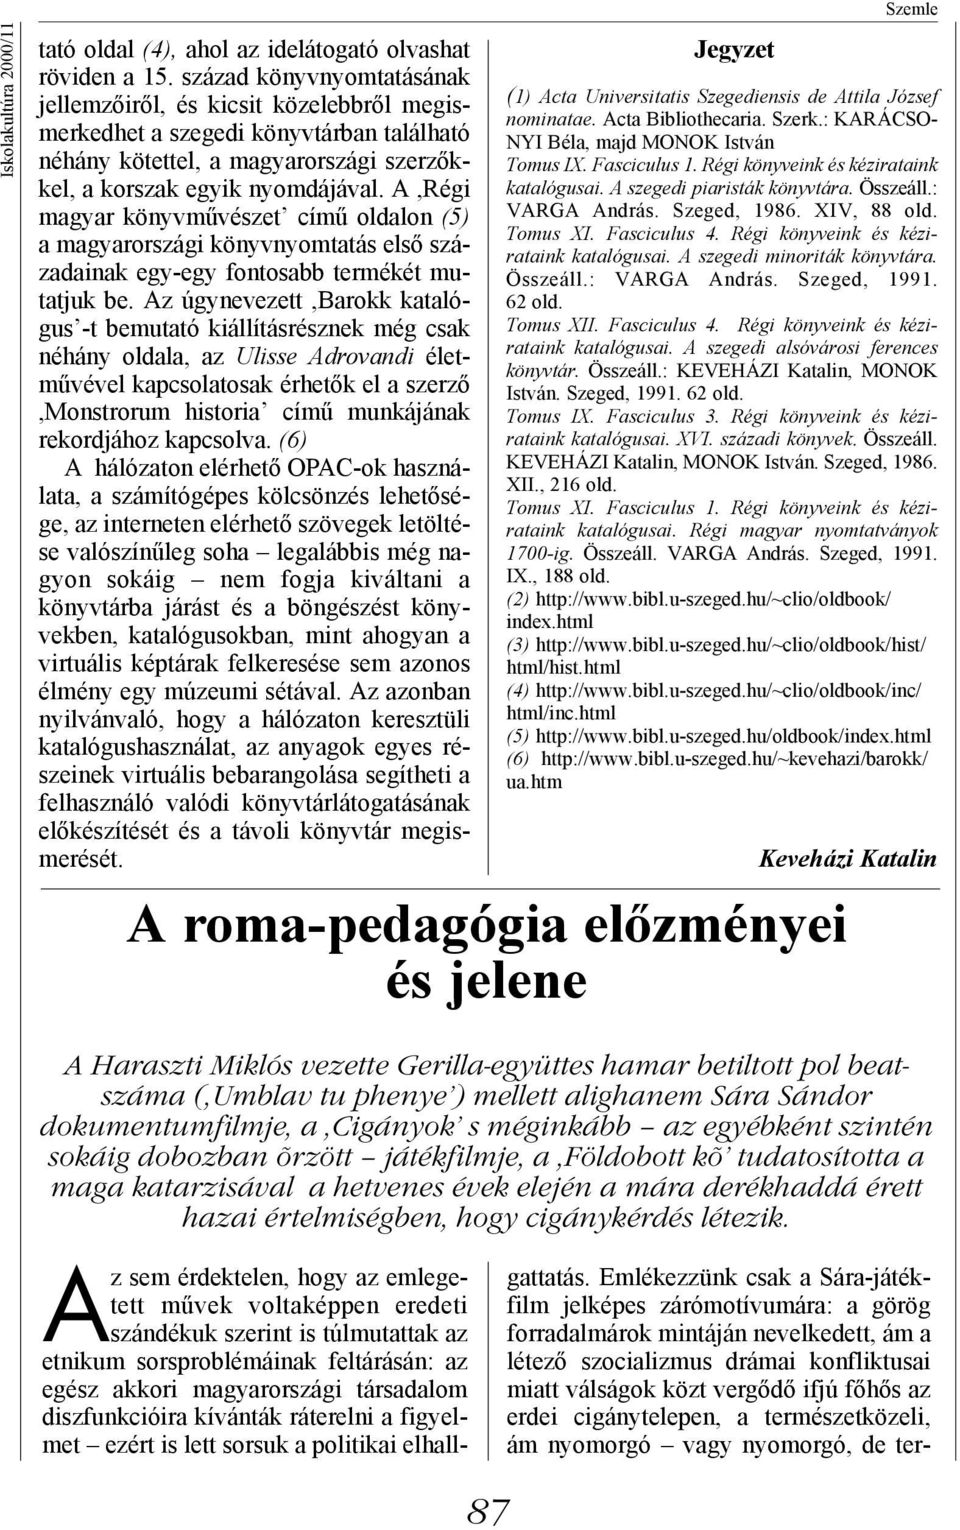 A,Régi magyar könyvművészet című oldalon (5) a magyarországi könyvnyomtatás első századainak egy-egy fontosabb termékét mutatjuk be.